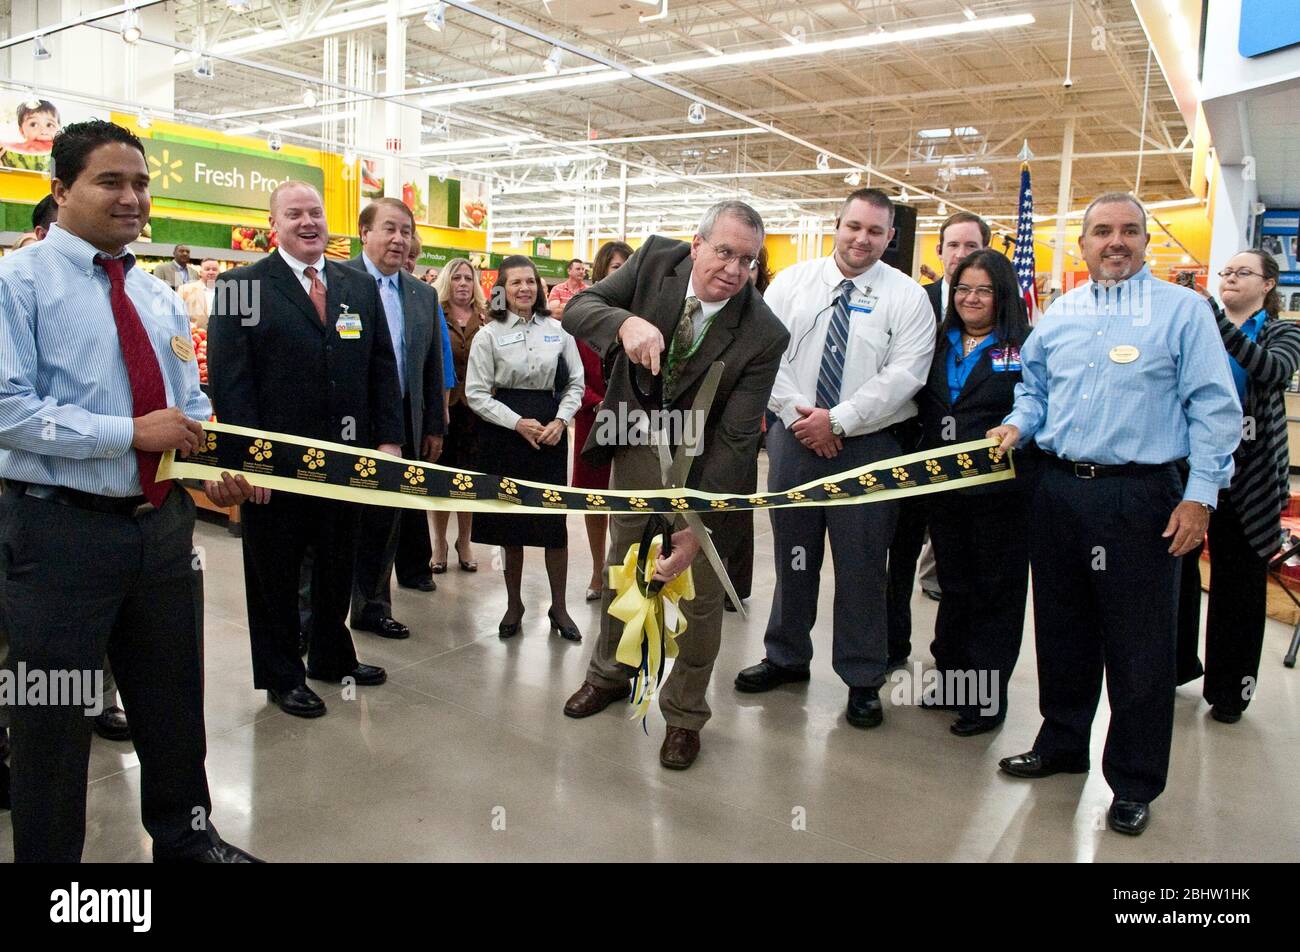 Il responsabile del negozio Wal-Mart taglia il nastro durante la grande apertura del negozio Wal-Mart ad Austin, Texas, 26 ottobre 2010. ©Marjorie Kamys Cotera / Daemmrich Foto Foto Stock